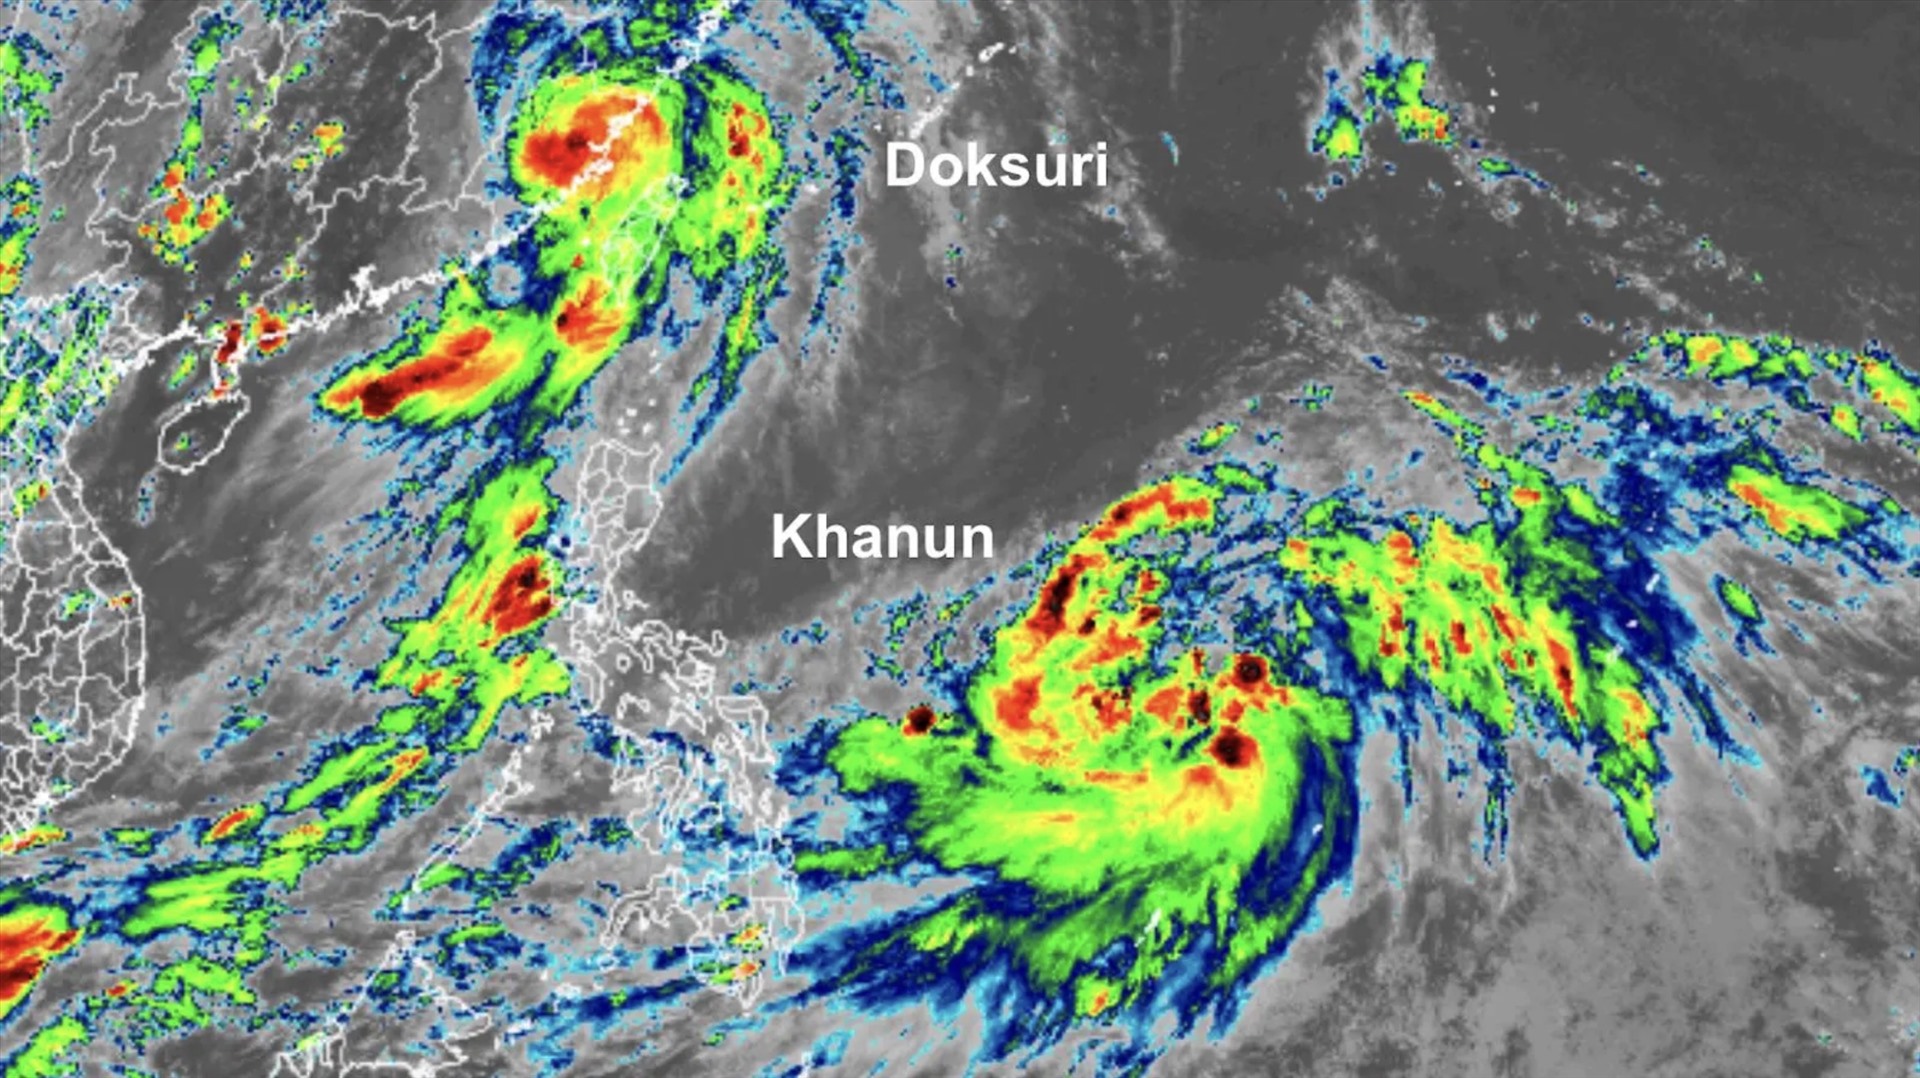 Bão Doksuri (bên trái) và bão Khanun lúc 12h54 ngày 28.7, khoảng 3 giờ sau khi Doksuri đổ bộ vào bờ biển phía đông nam Trung Quốc. Ảnh: RAMMB/CIRA/CSU